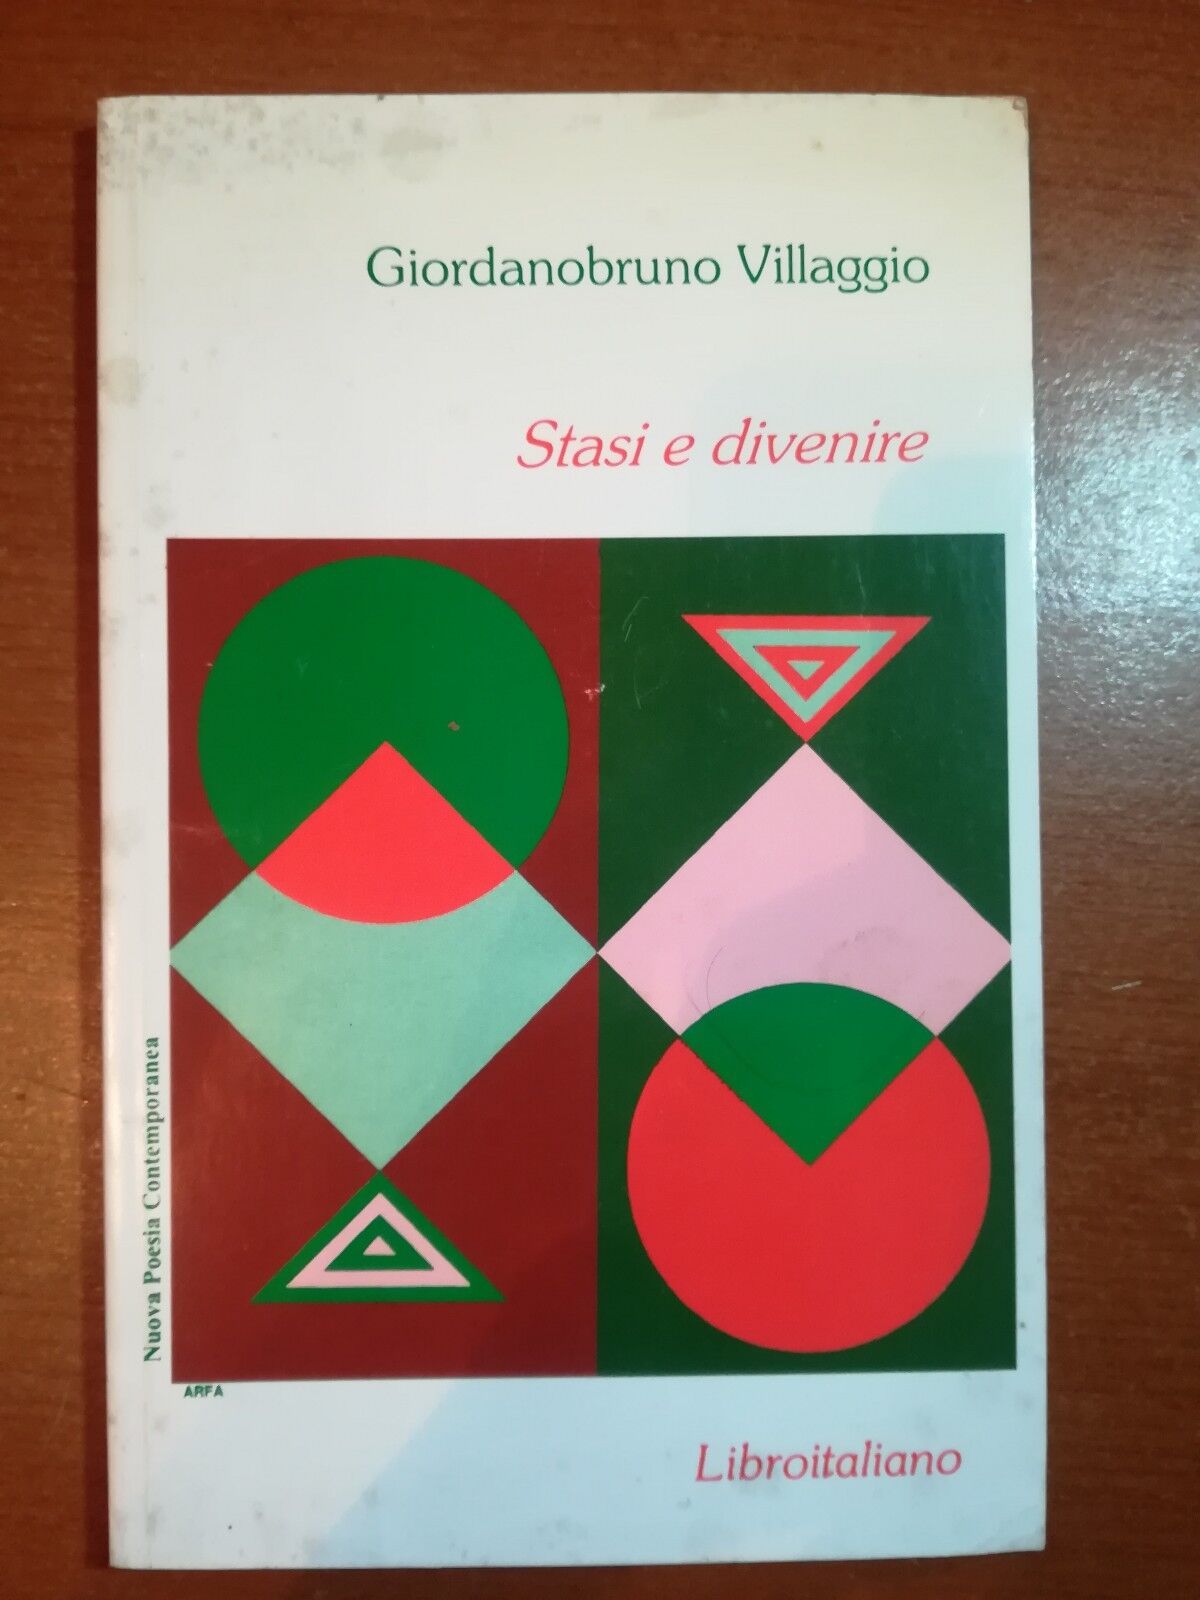 Stasi e divenire - Giordanobruno Villaggio - Libroitaliano - 1998    - M